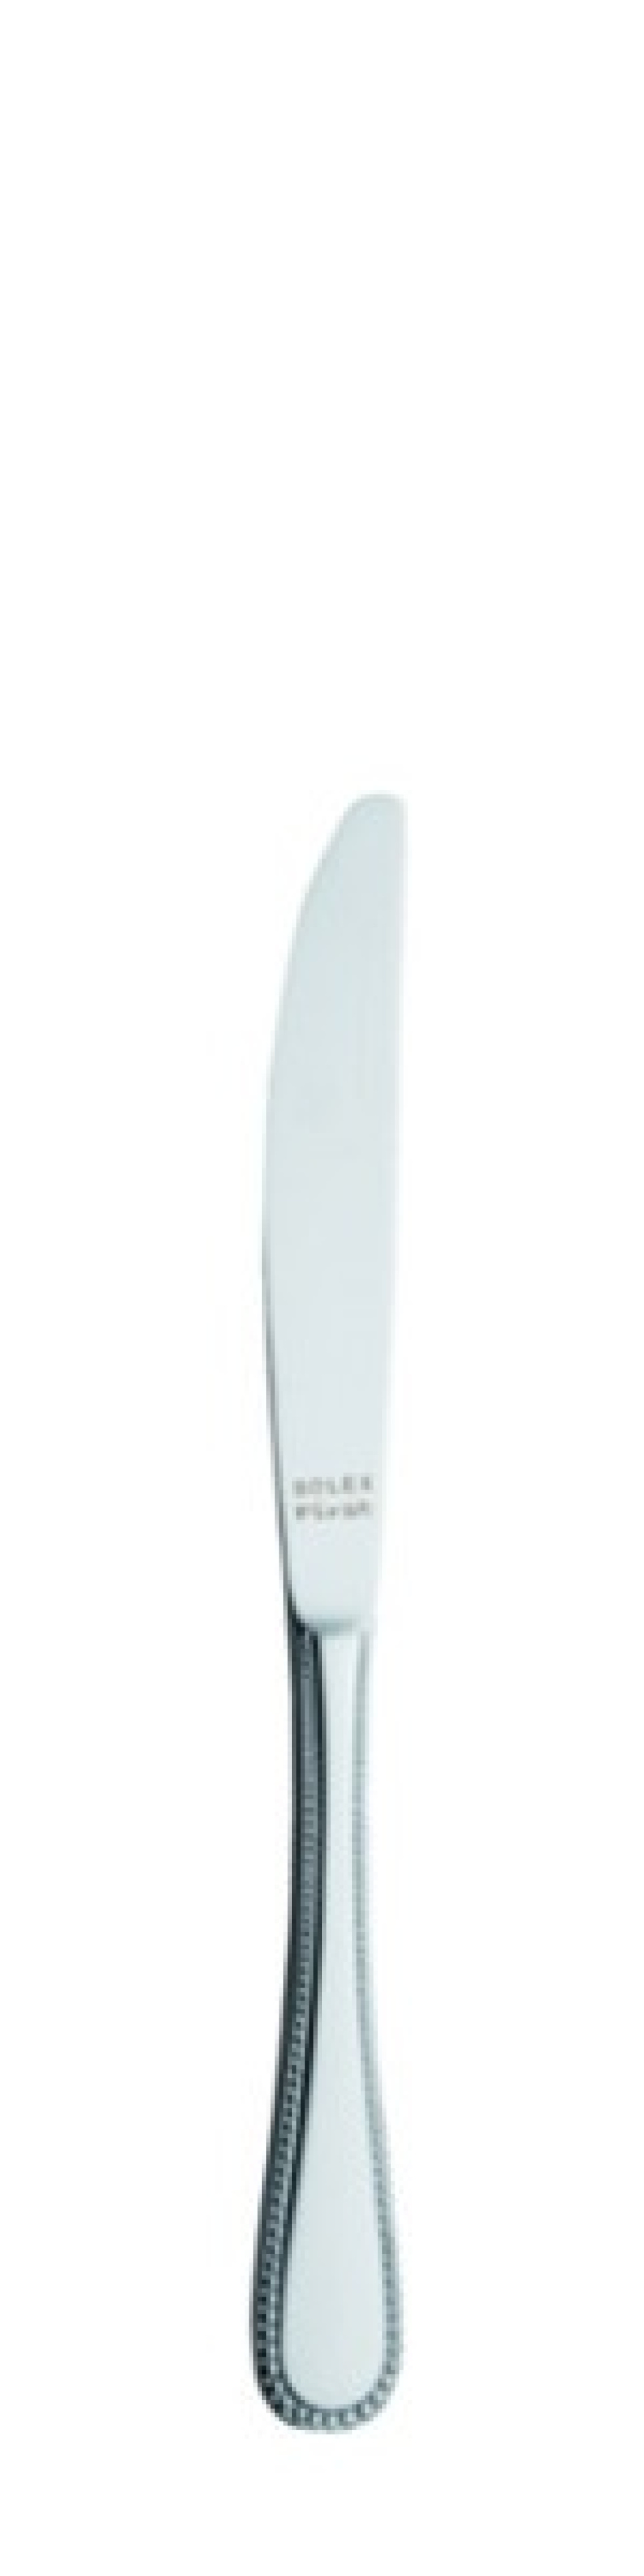 Perle Dessertmesser 205 mm - Solex in der Gruppe Tischgedeck / Besteck / Messer bei The Kitchen Lab (1284-21423)